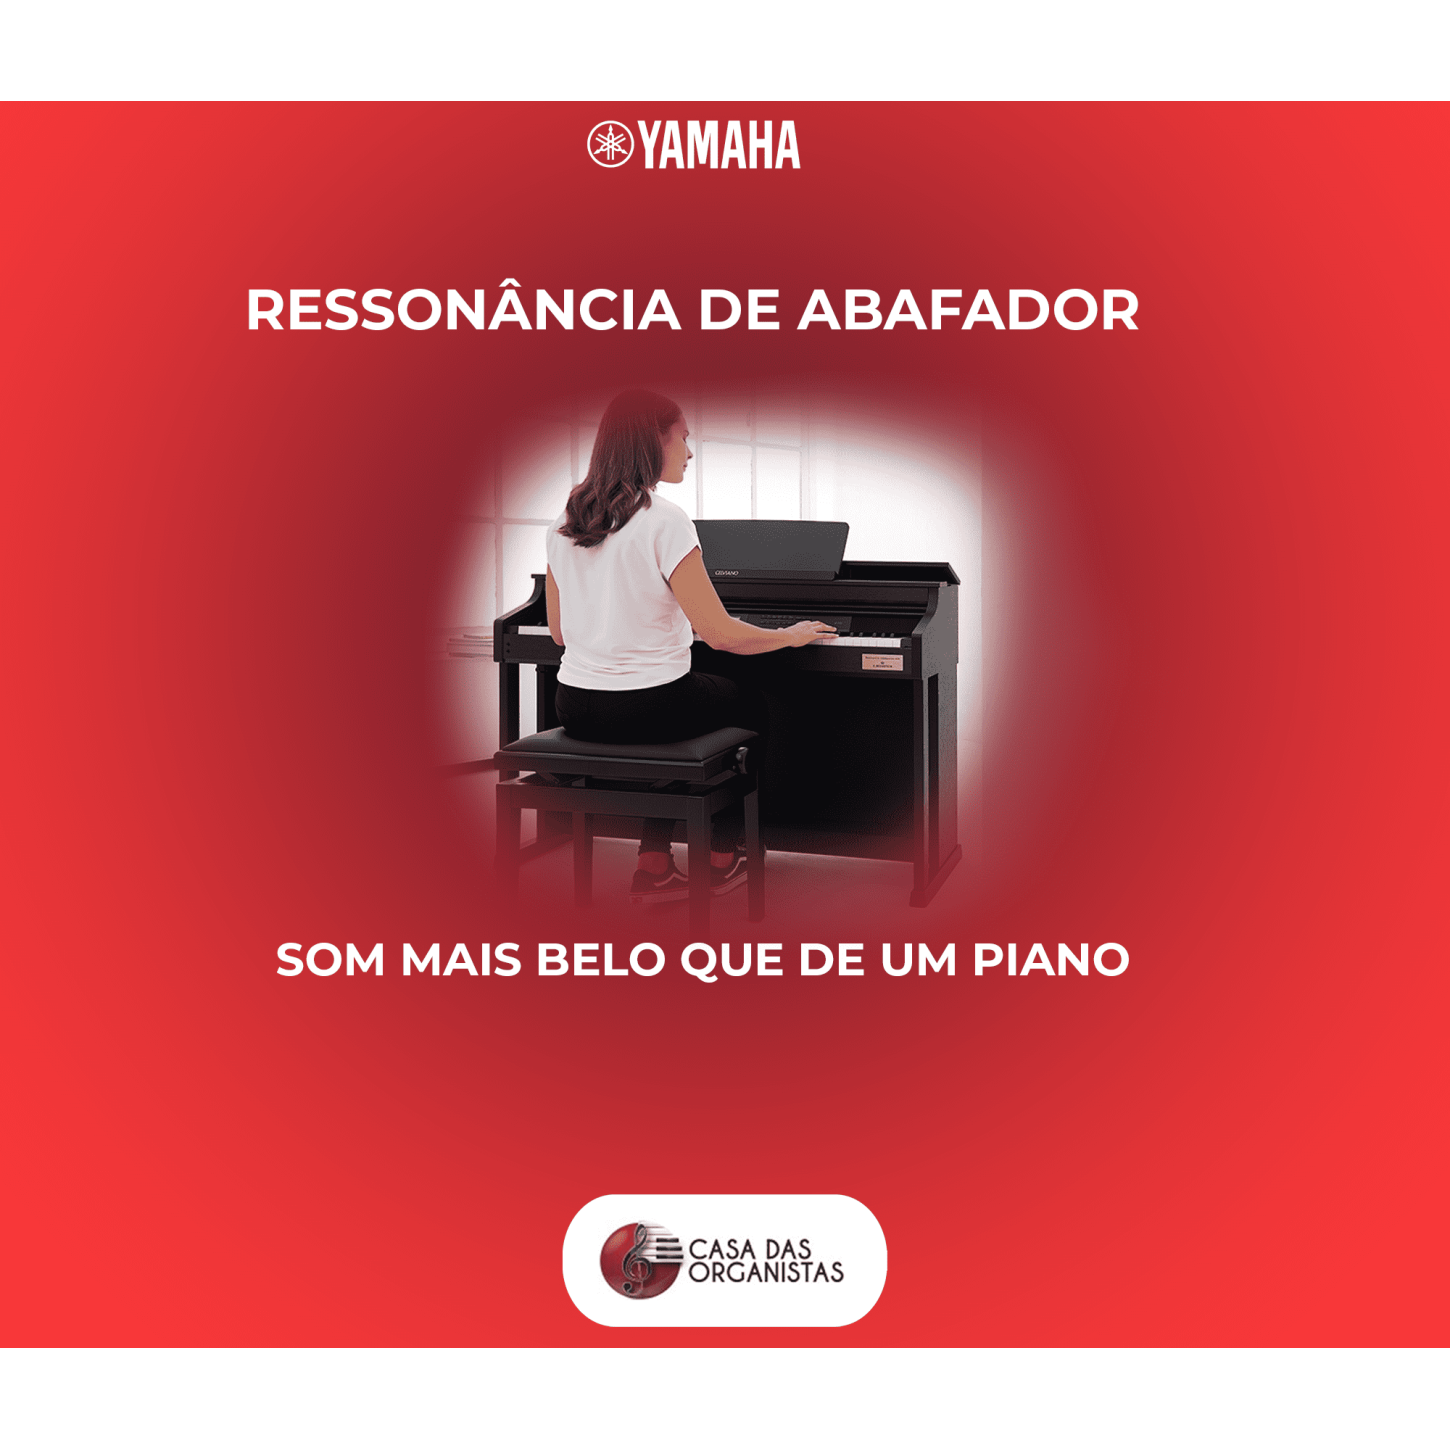 Piano Digital Casio Ap710 Celviano Preto